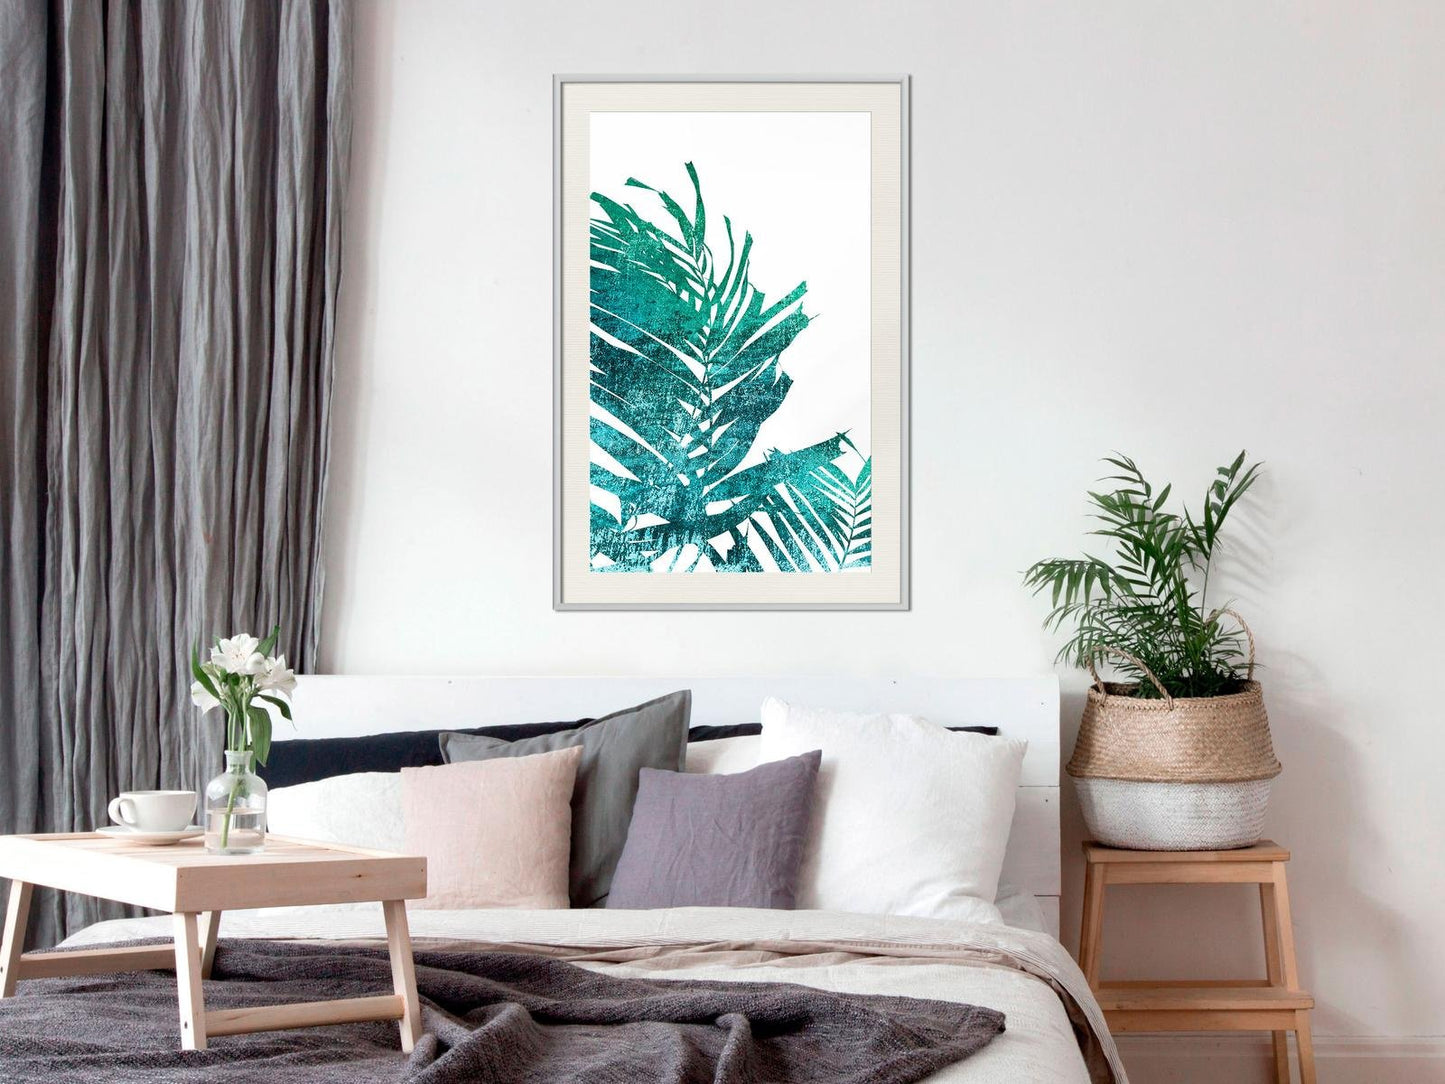 Blaugrüne Palme auf weißem Hintergrund